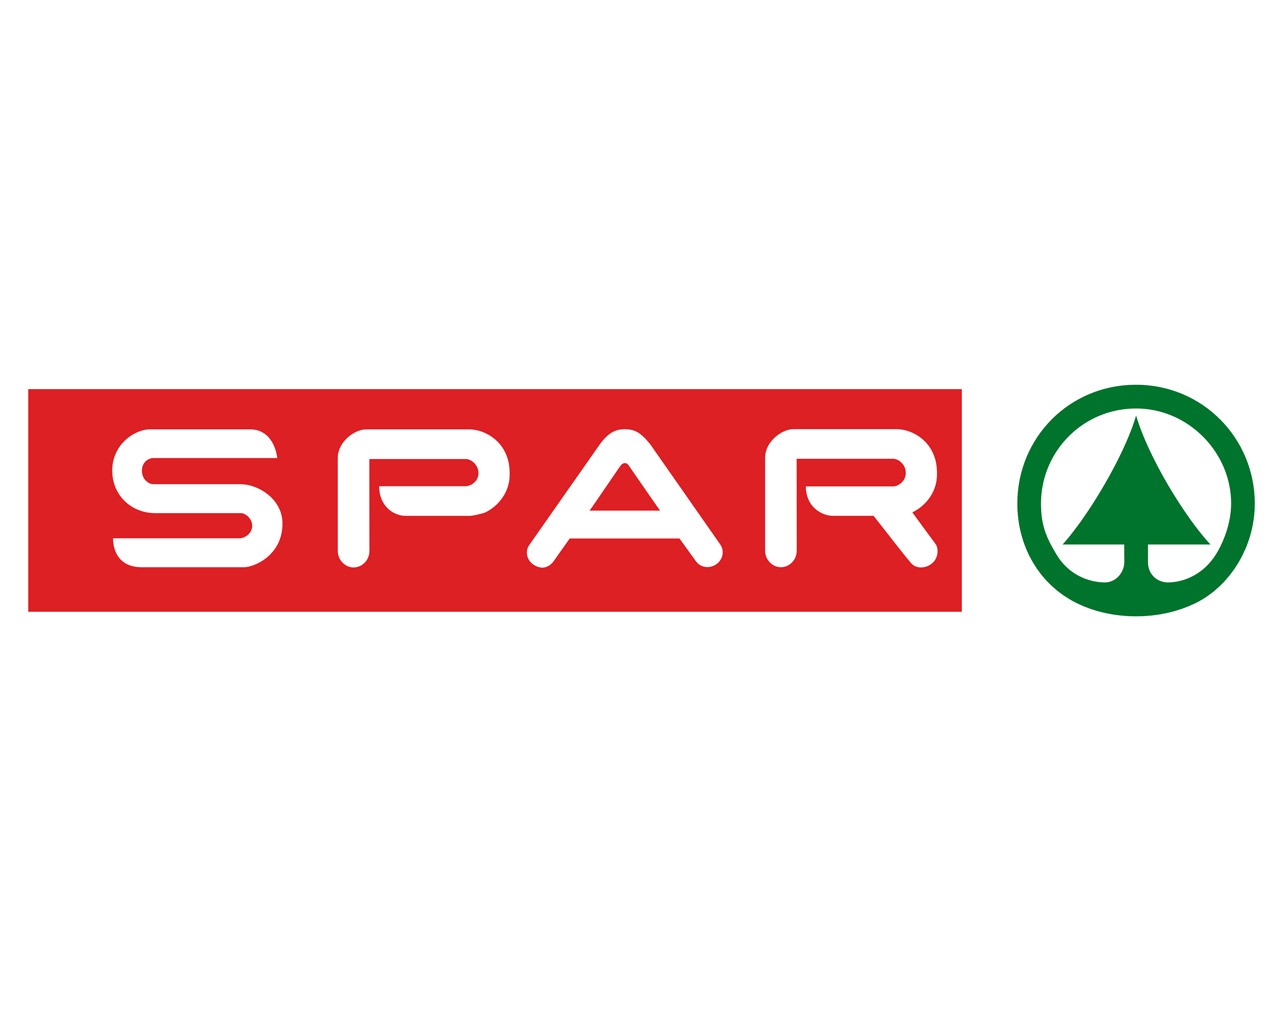 SPAR ruft diverse Produkte zurück, da sie verunreinigt sein könnten.